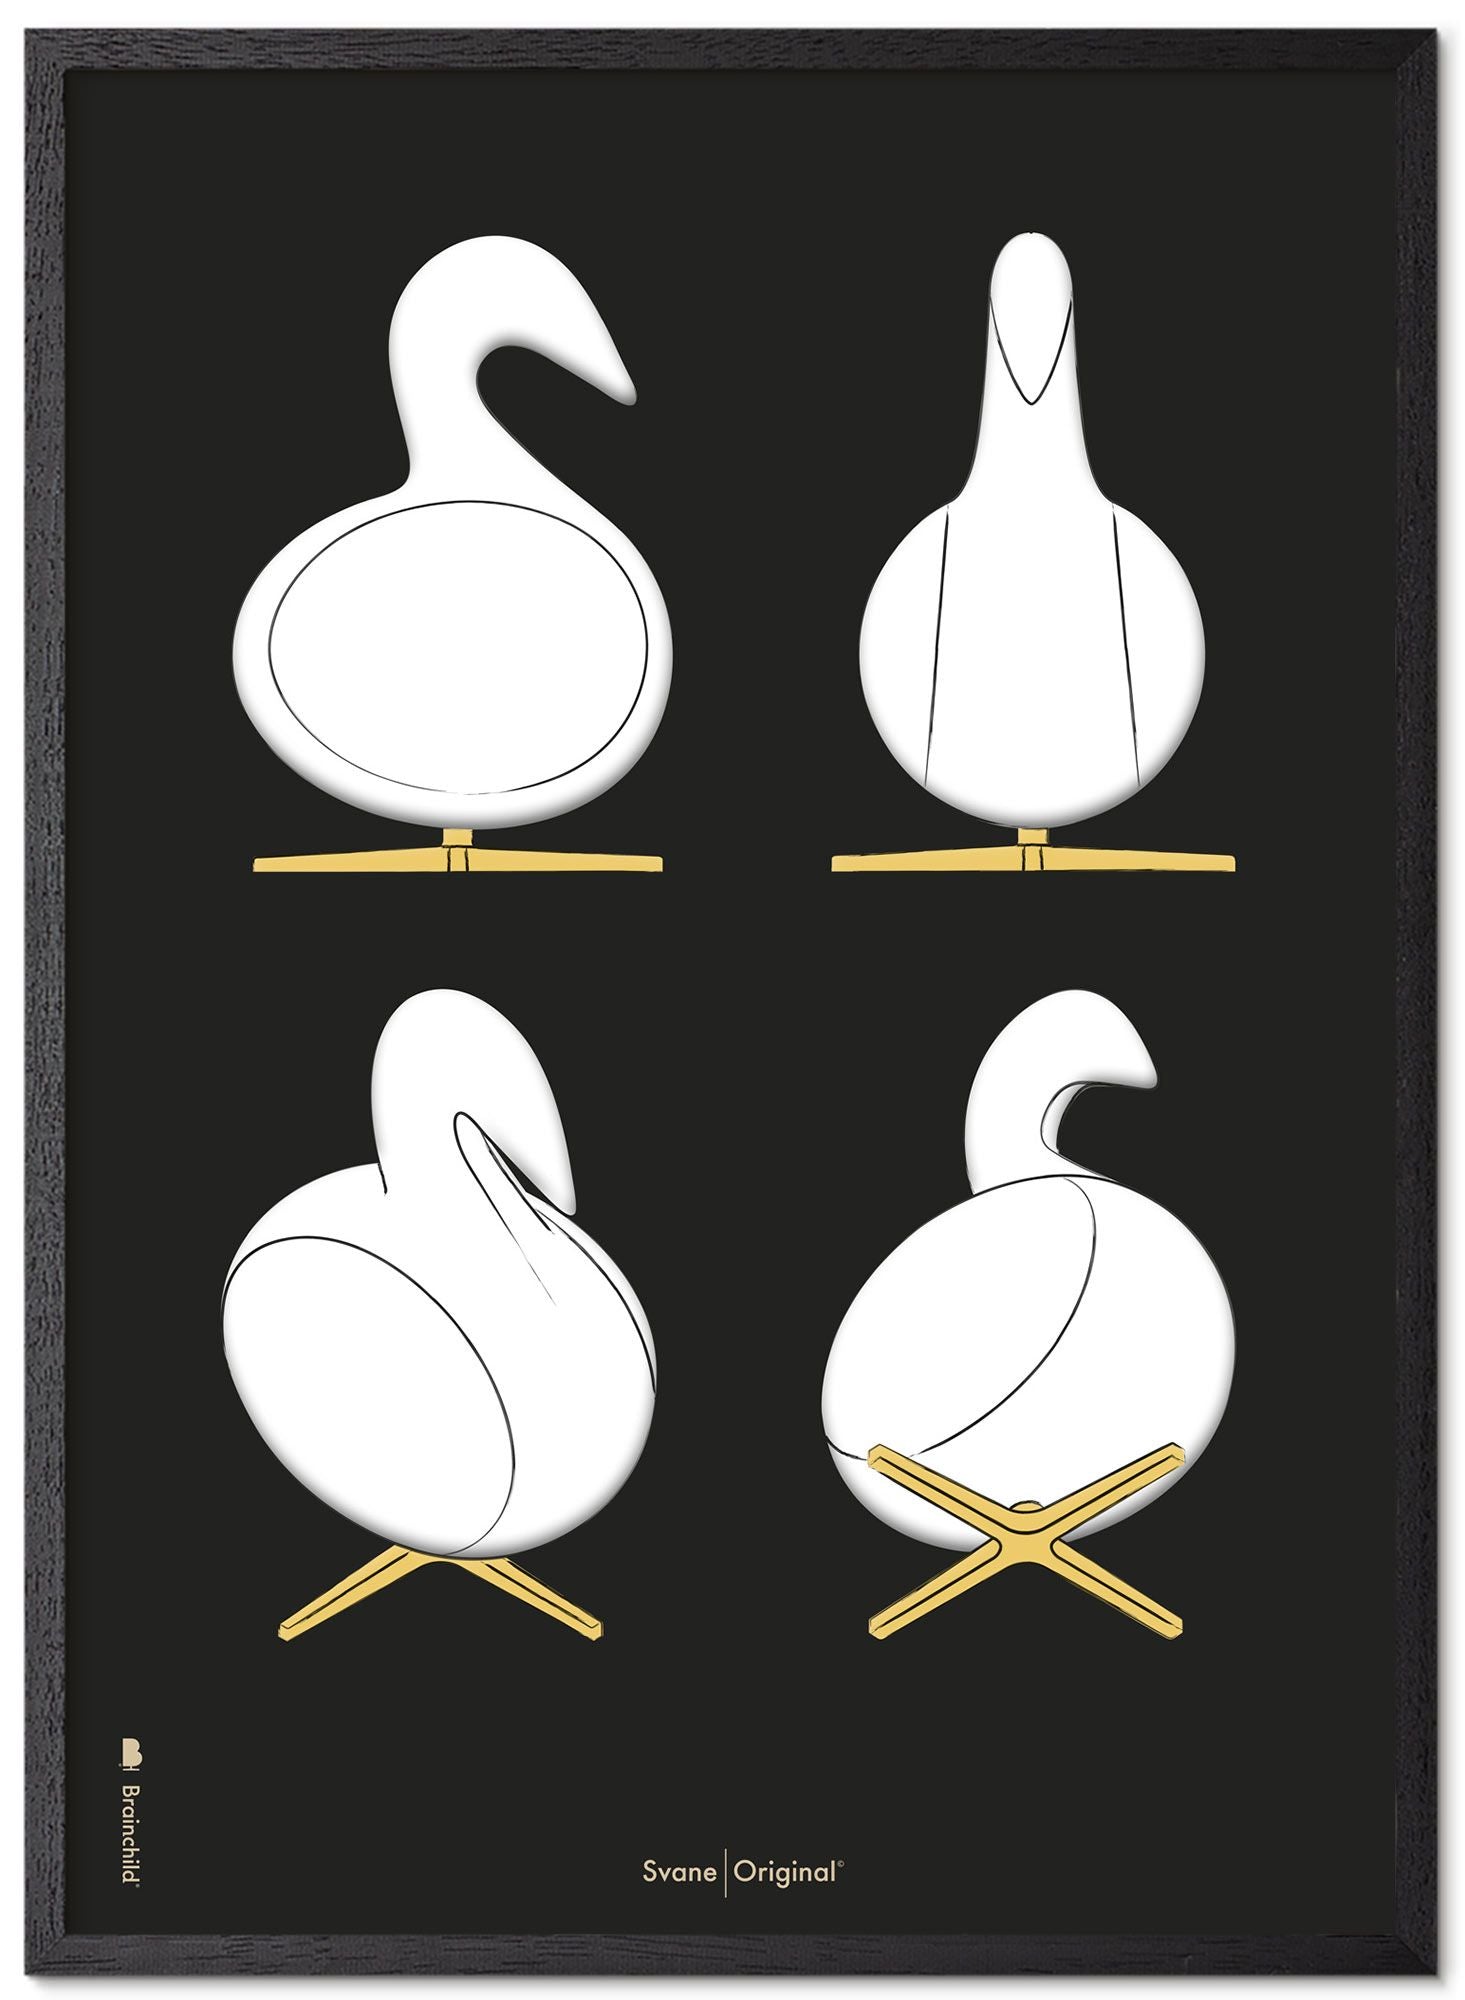 Marco de póster de bocetos de diseño de Swan de creación hecha de madera lacada negra A5, fondo negro